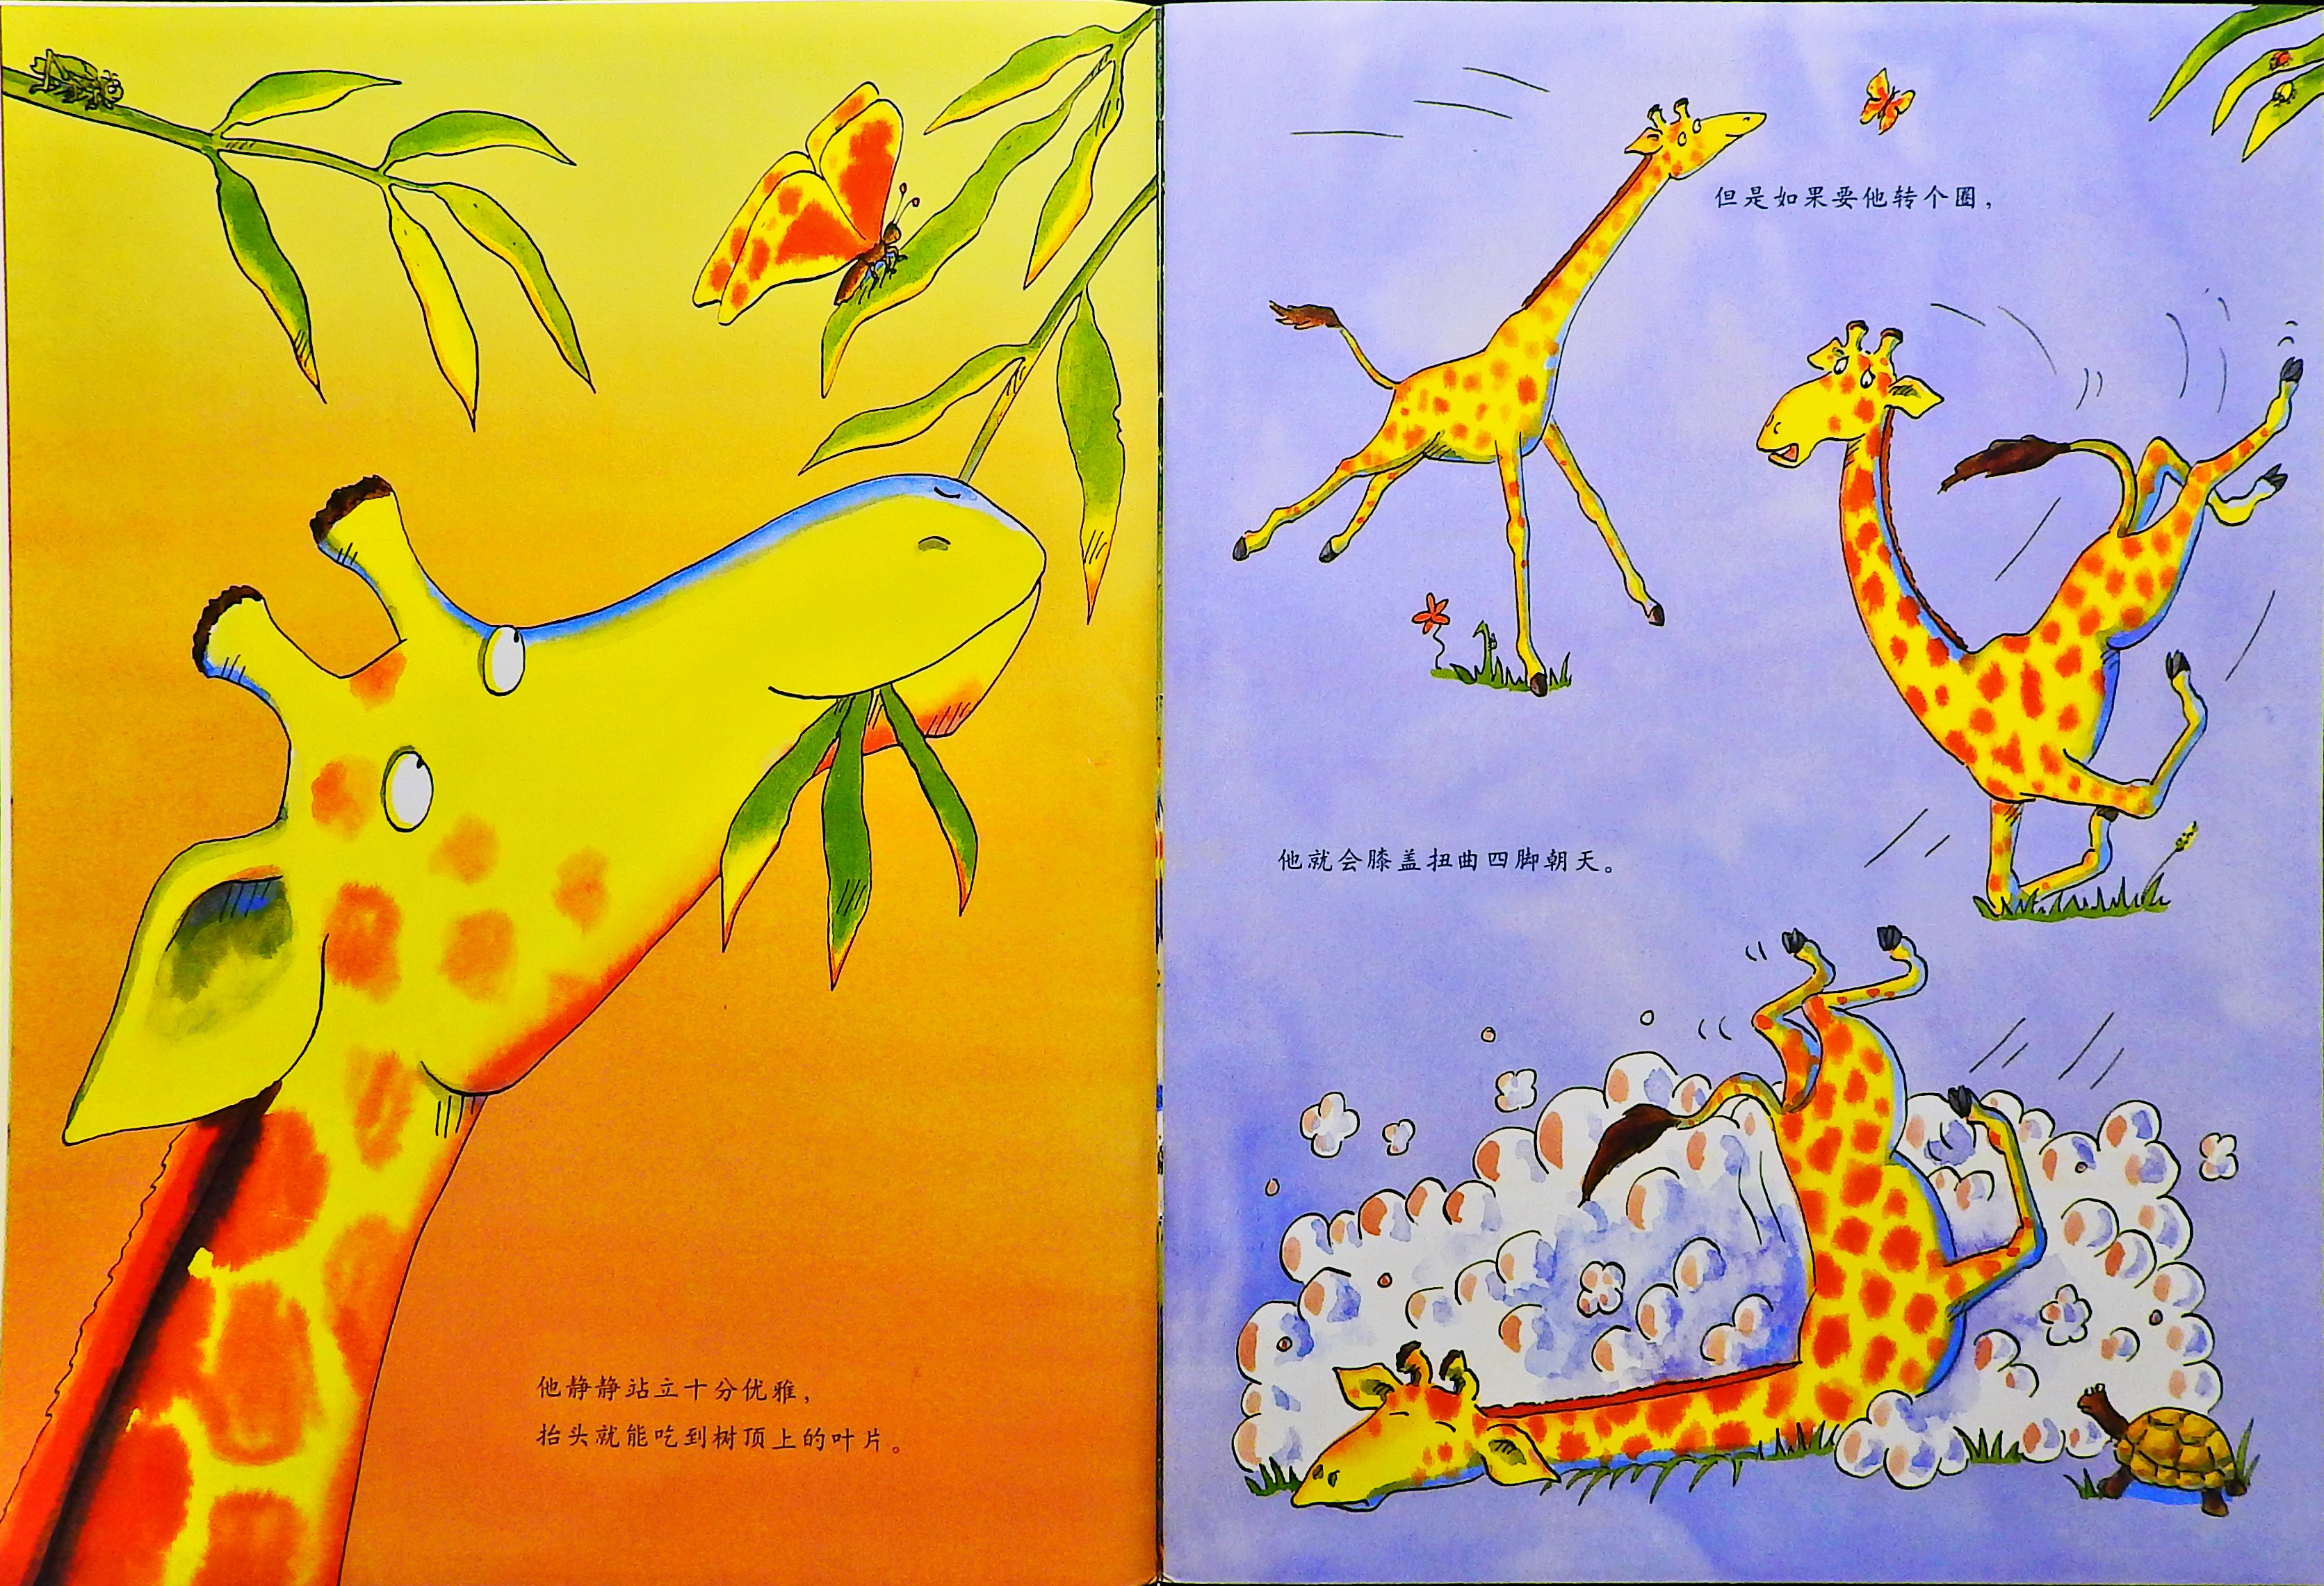 长颈鹿不会跳舞 (04),绘本,绘本故事,绘本阅读,故事书,童书,图画书,课外阅读